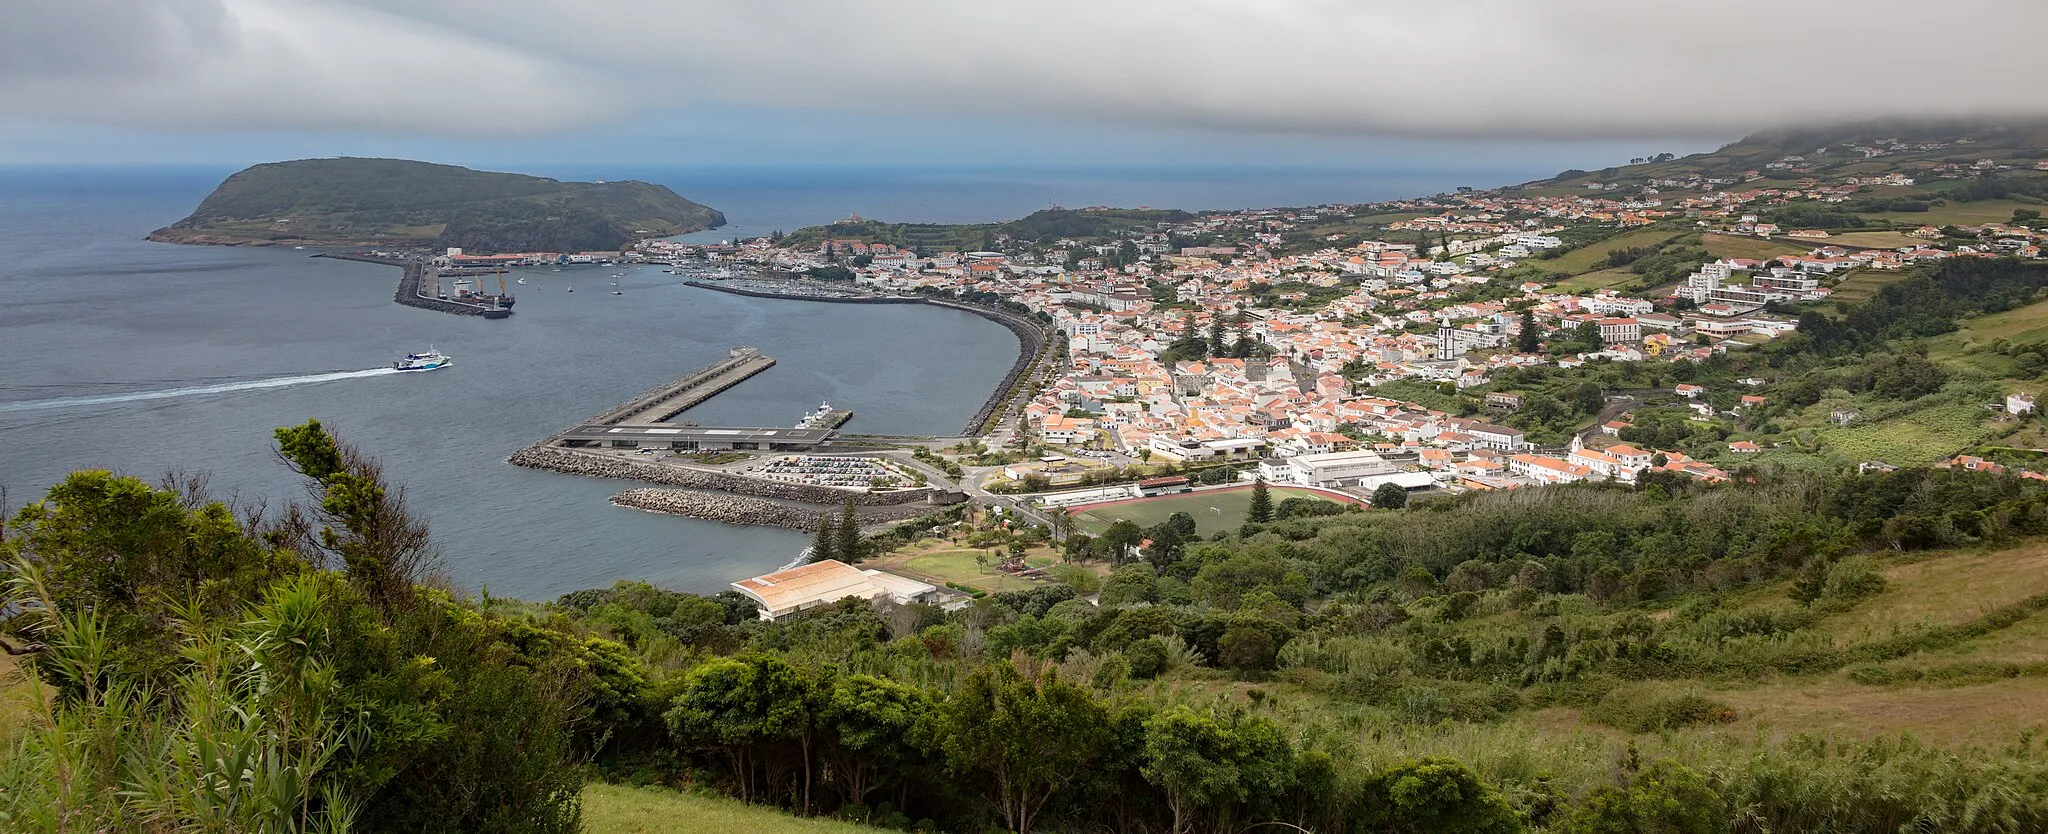 Photo showing: View of Horta from miradouro de Nossa Senhora da Conceição, Faial Island, Azores, Portugal